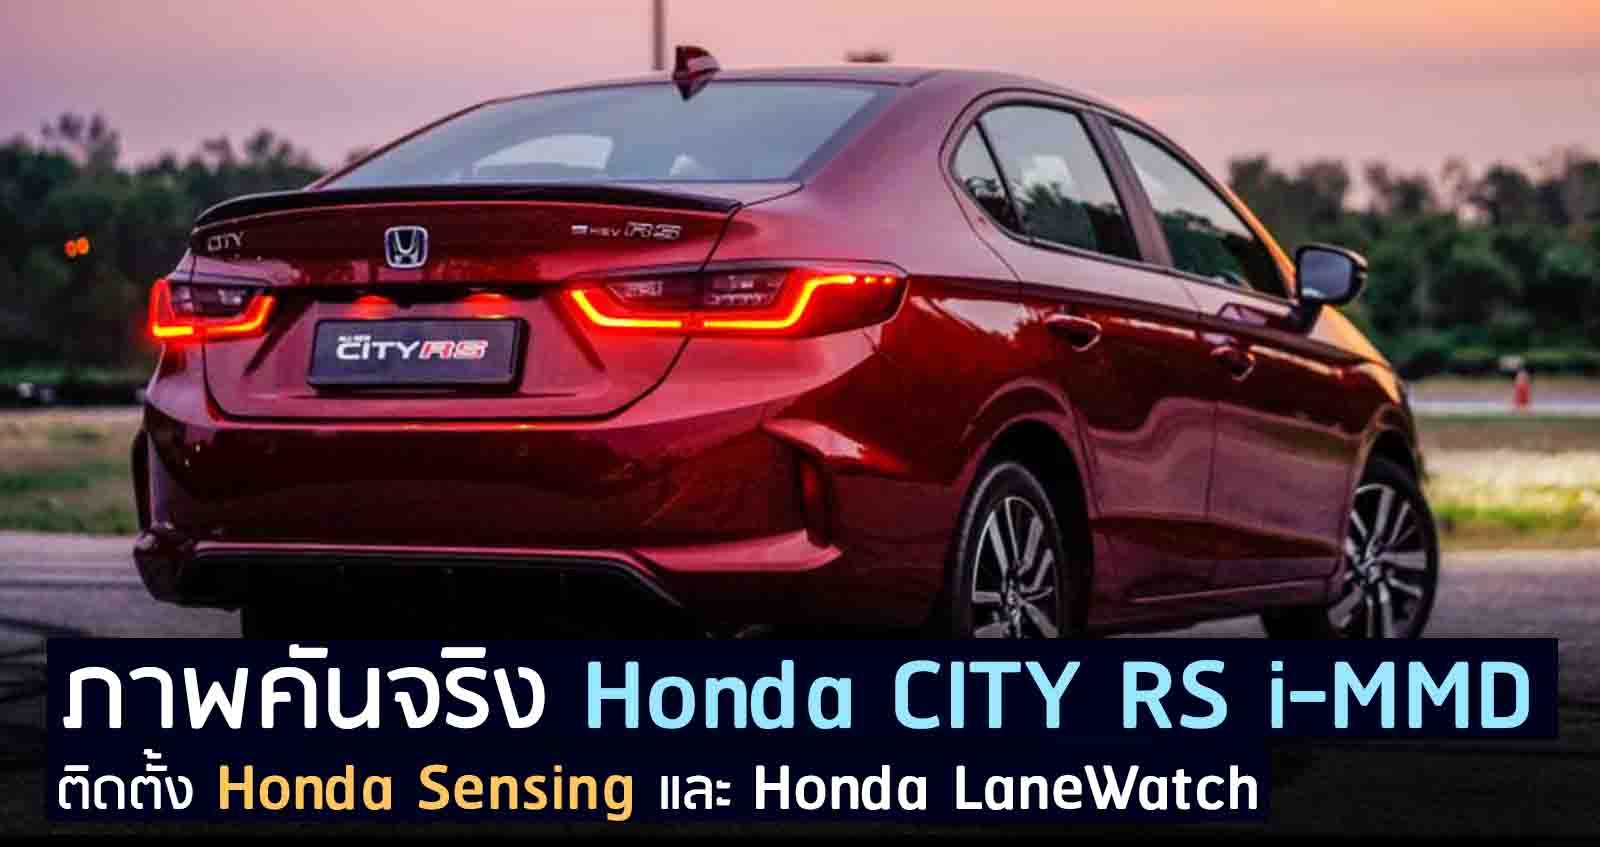 ภาพคันจริง Honda CITY RS i-MMD + Honda Sensing ในมาเลเซีย